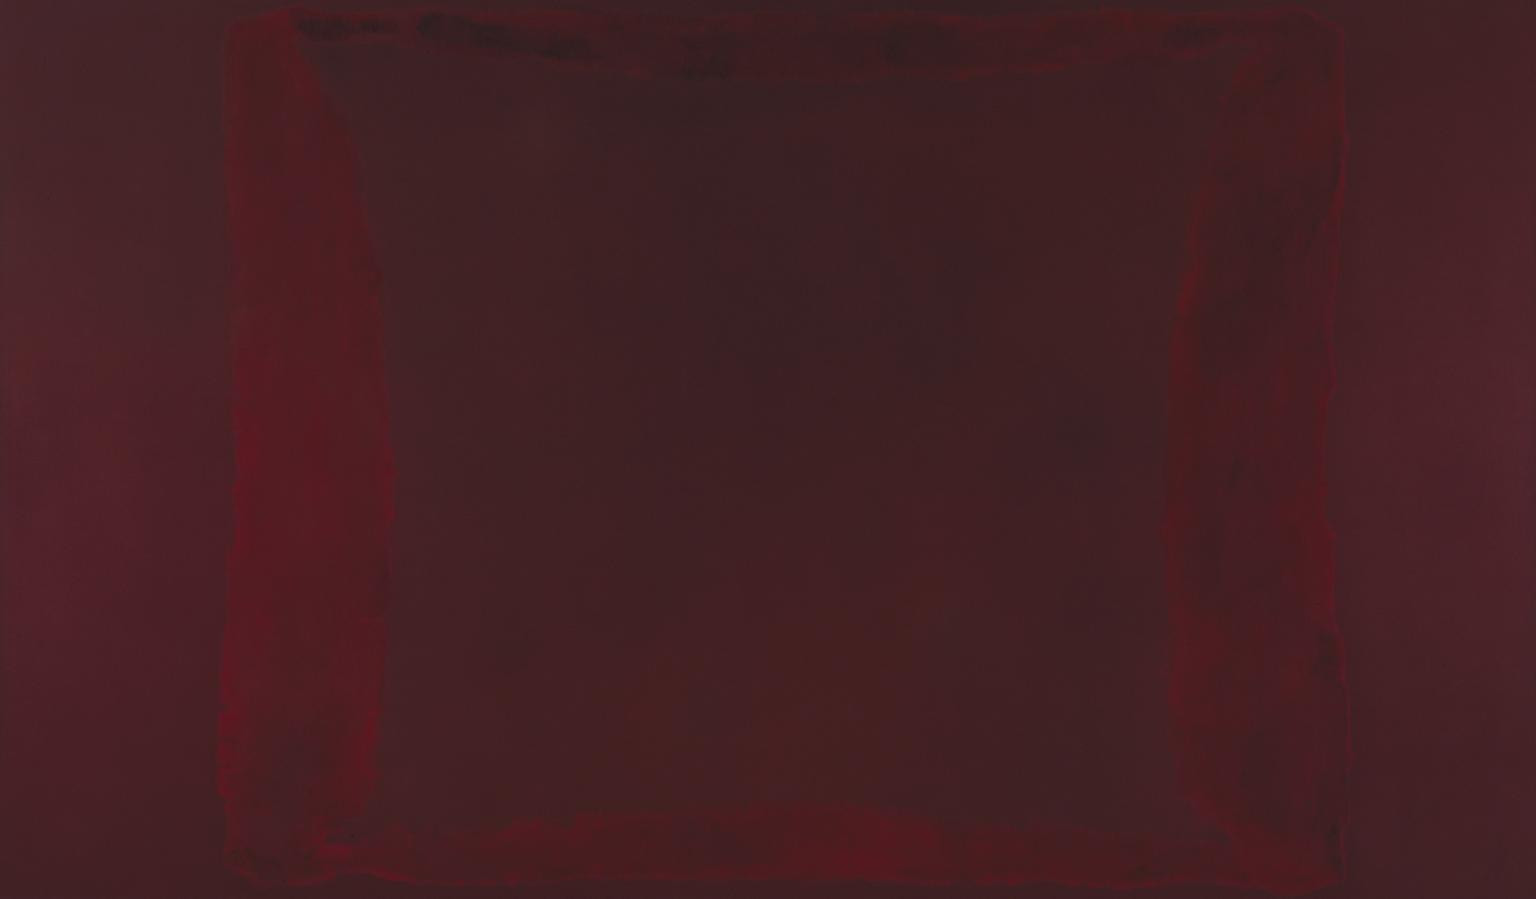 Марк Ротко. Красный на&nbsp;<nobr>темно-бордовом</nobr>. 1959